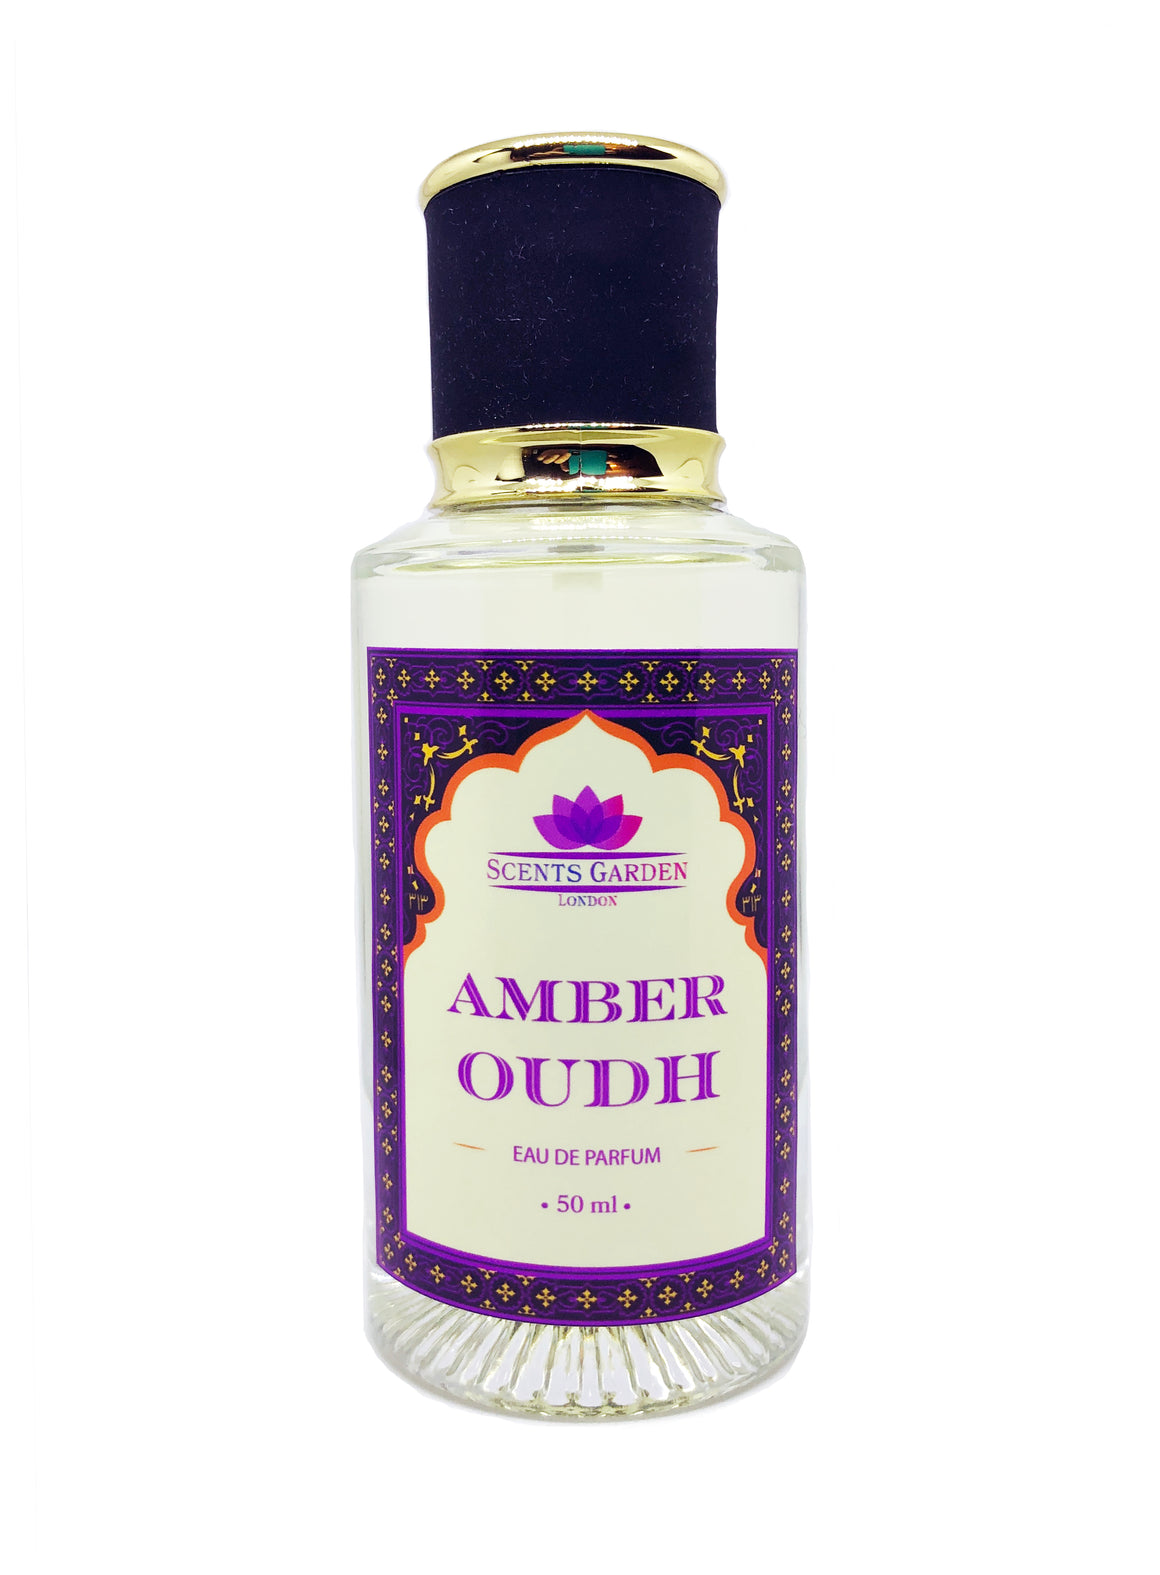 Amber Oudh Eau de Parfum 50 ml - Spray Perfume